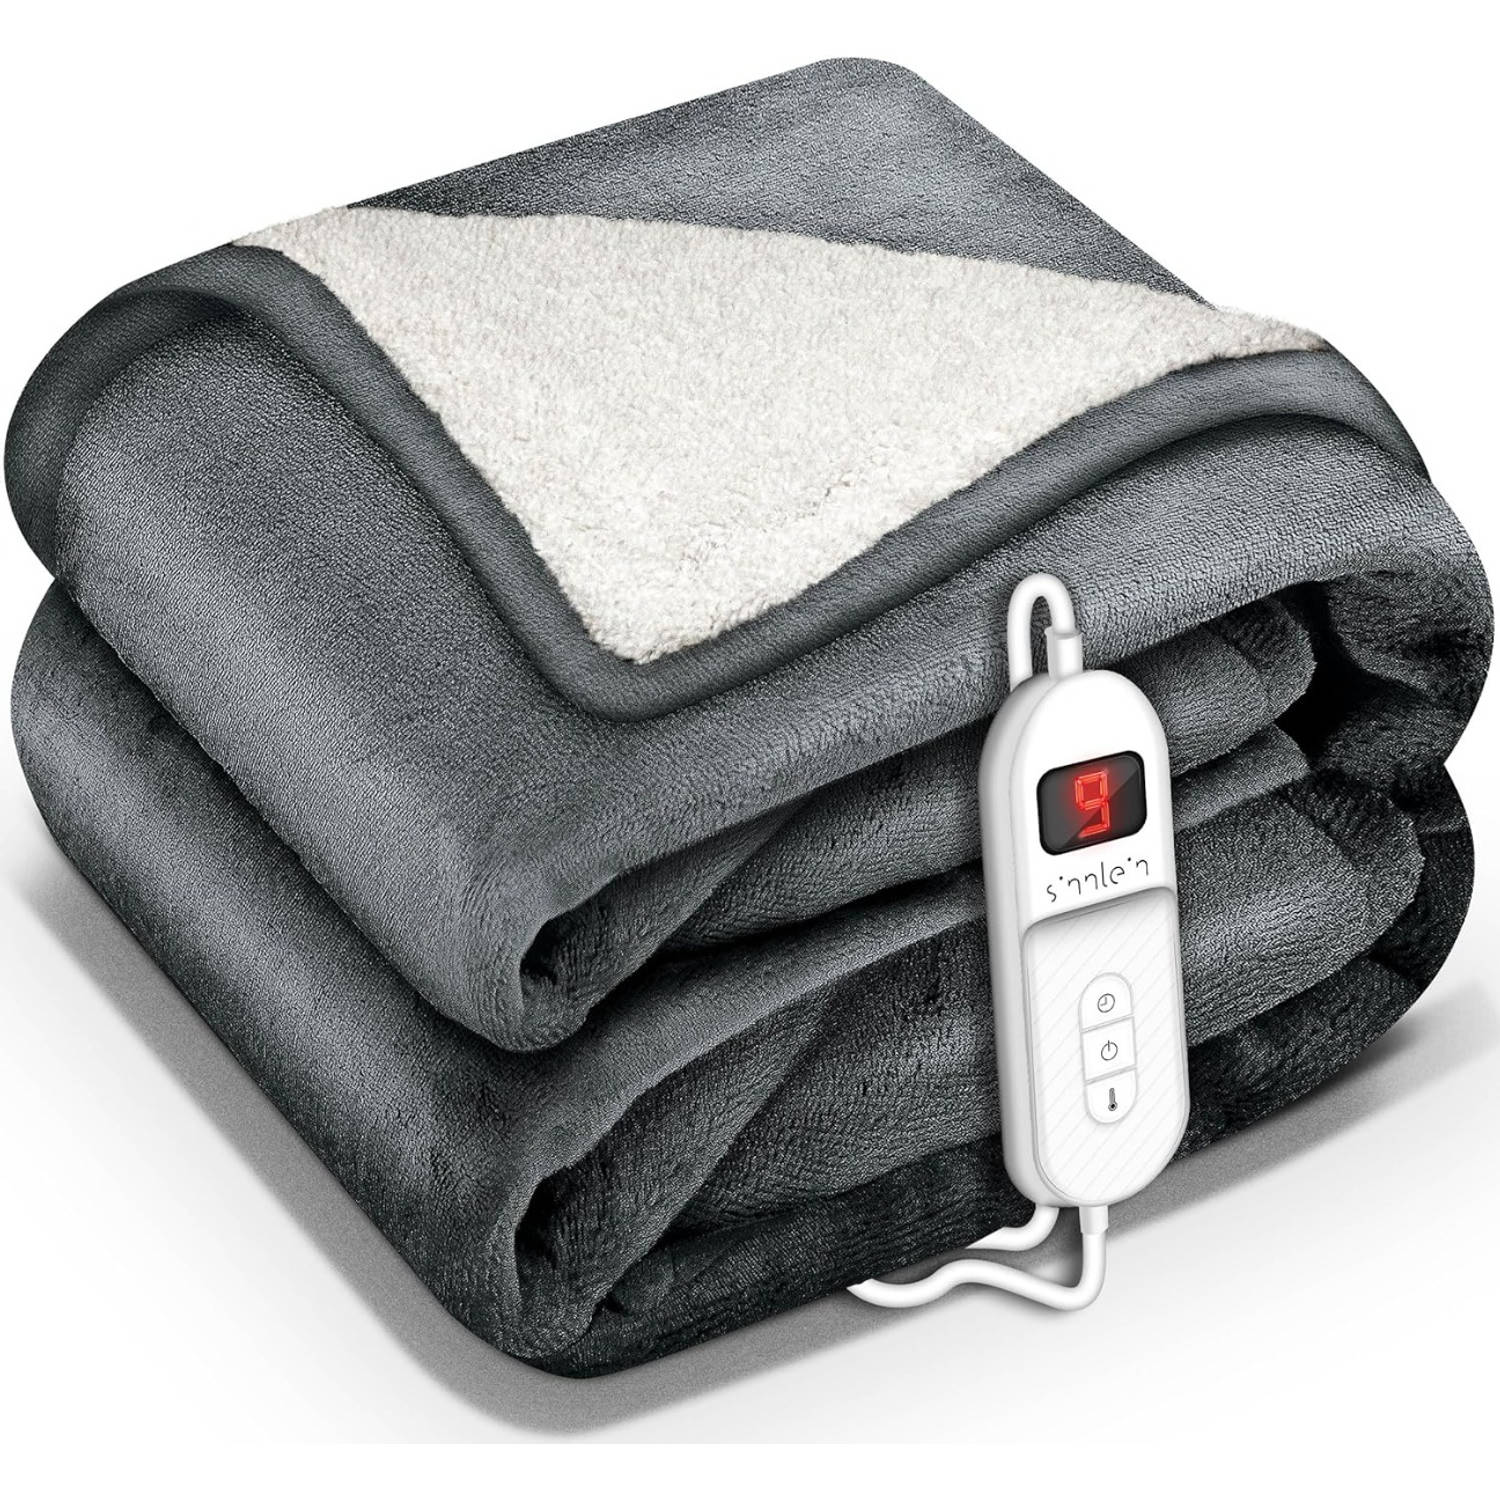 Sinnlein- Elektrische deken met automatische uitschakeling, donkergrijs, 160x120 cm, warmtedeken met 9 temperatuurniveaus, knuffeldeken, wasbaar